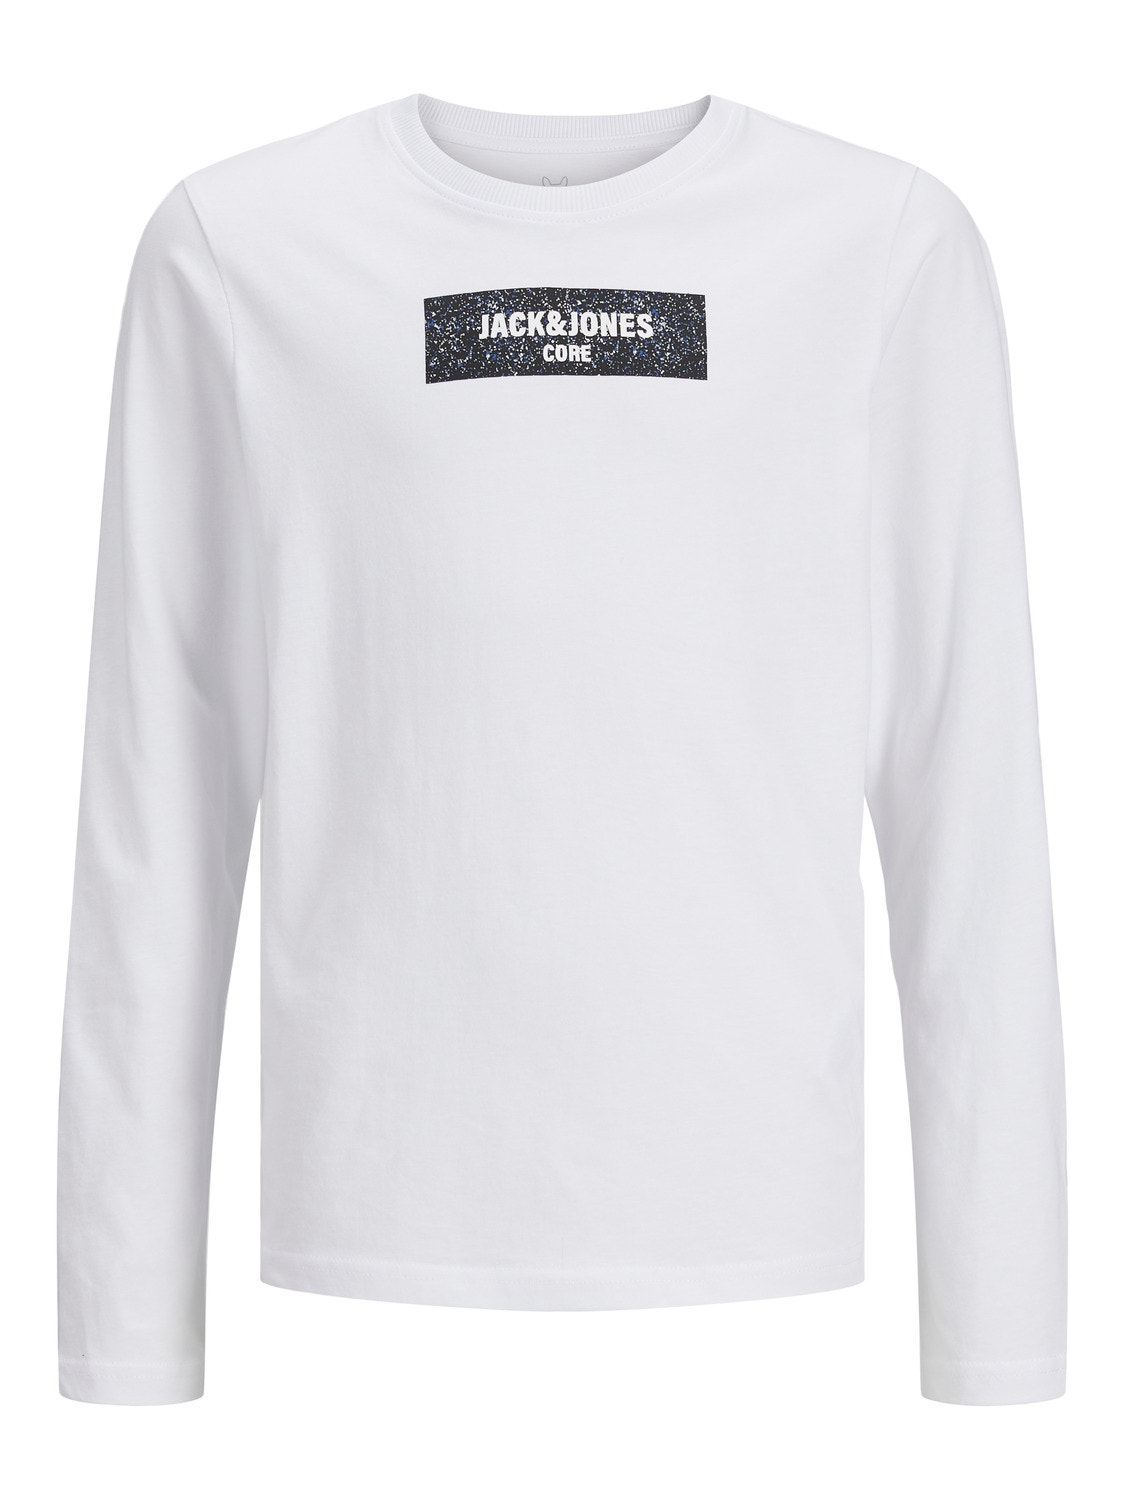 Jack & Jones Logo T-shirt For boys -White - 12243038